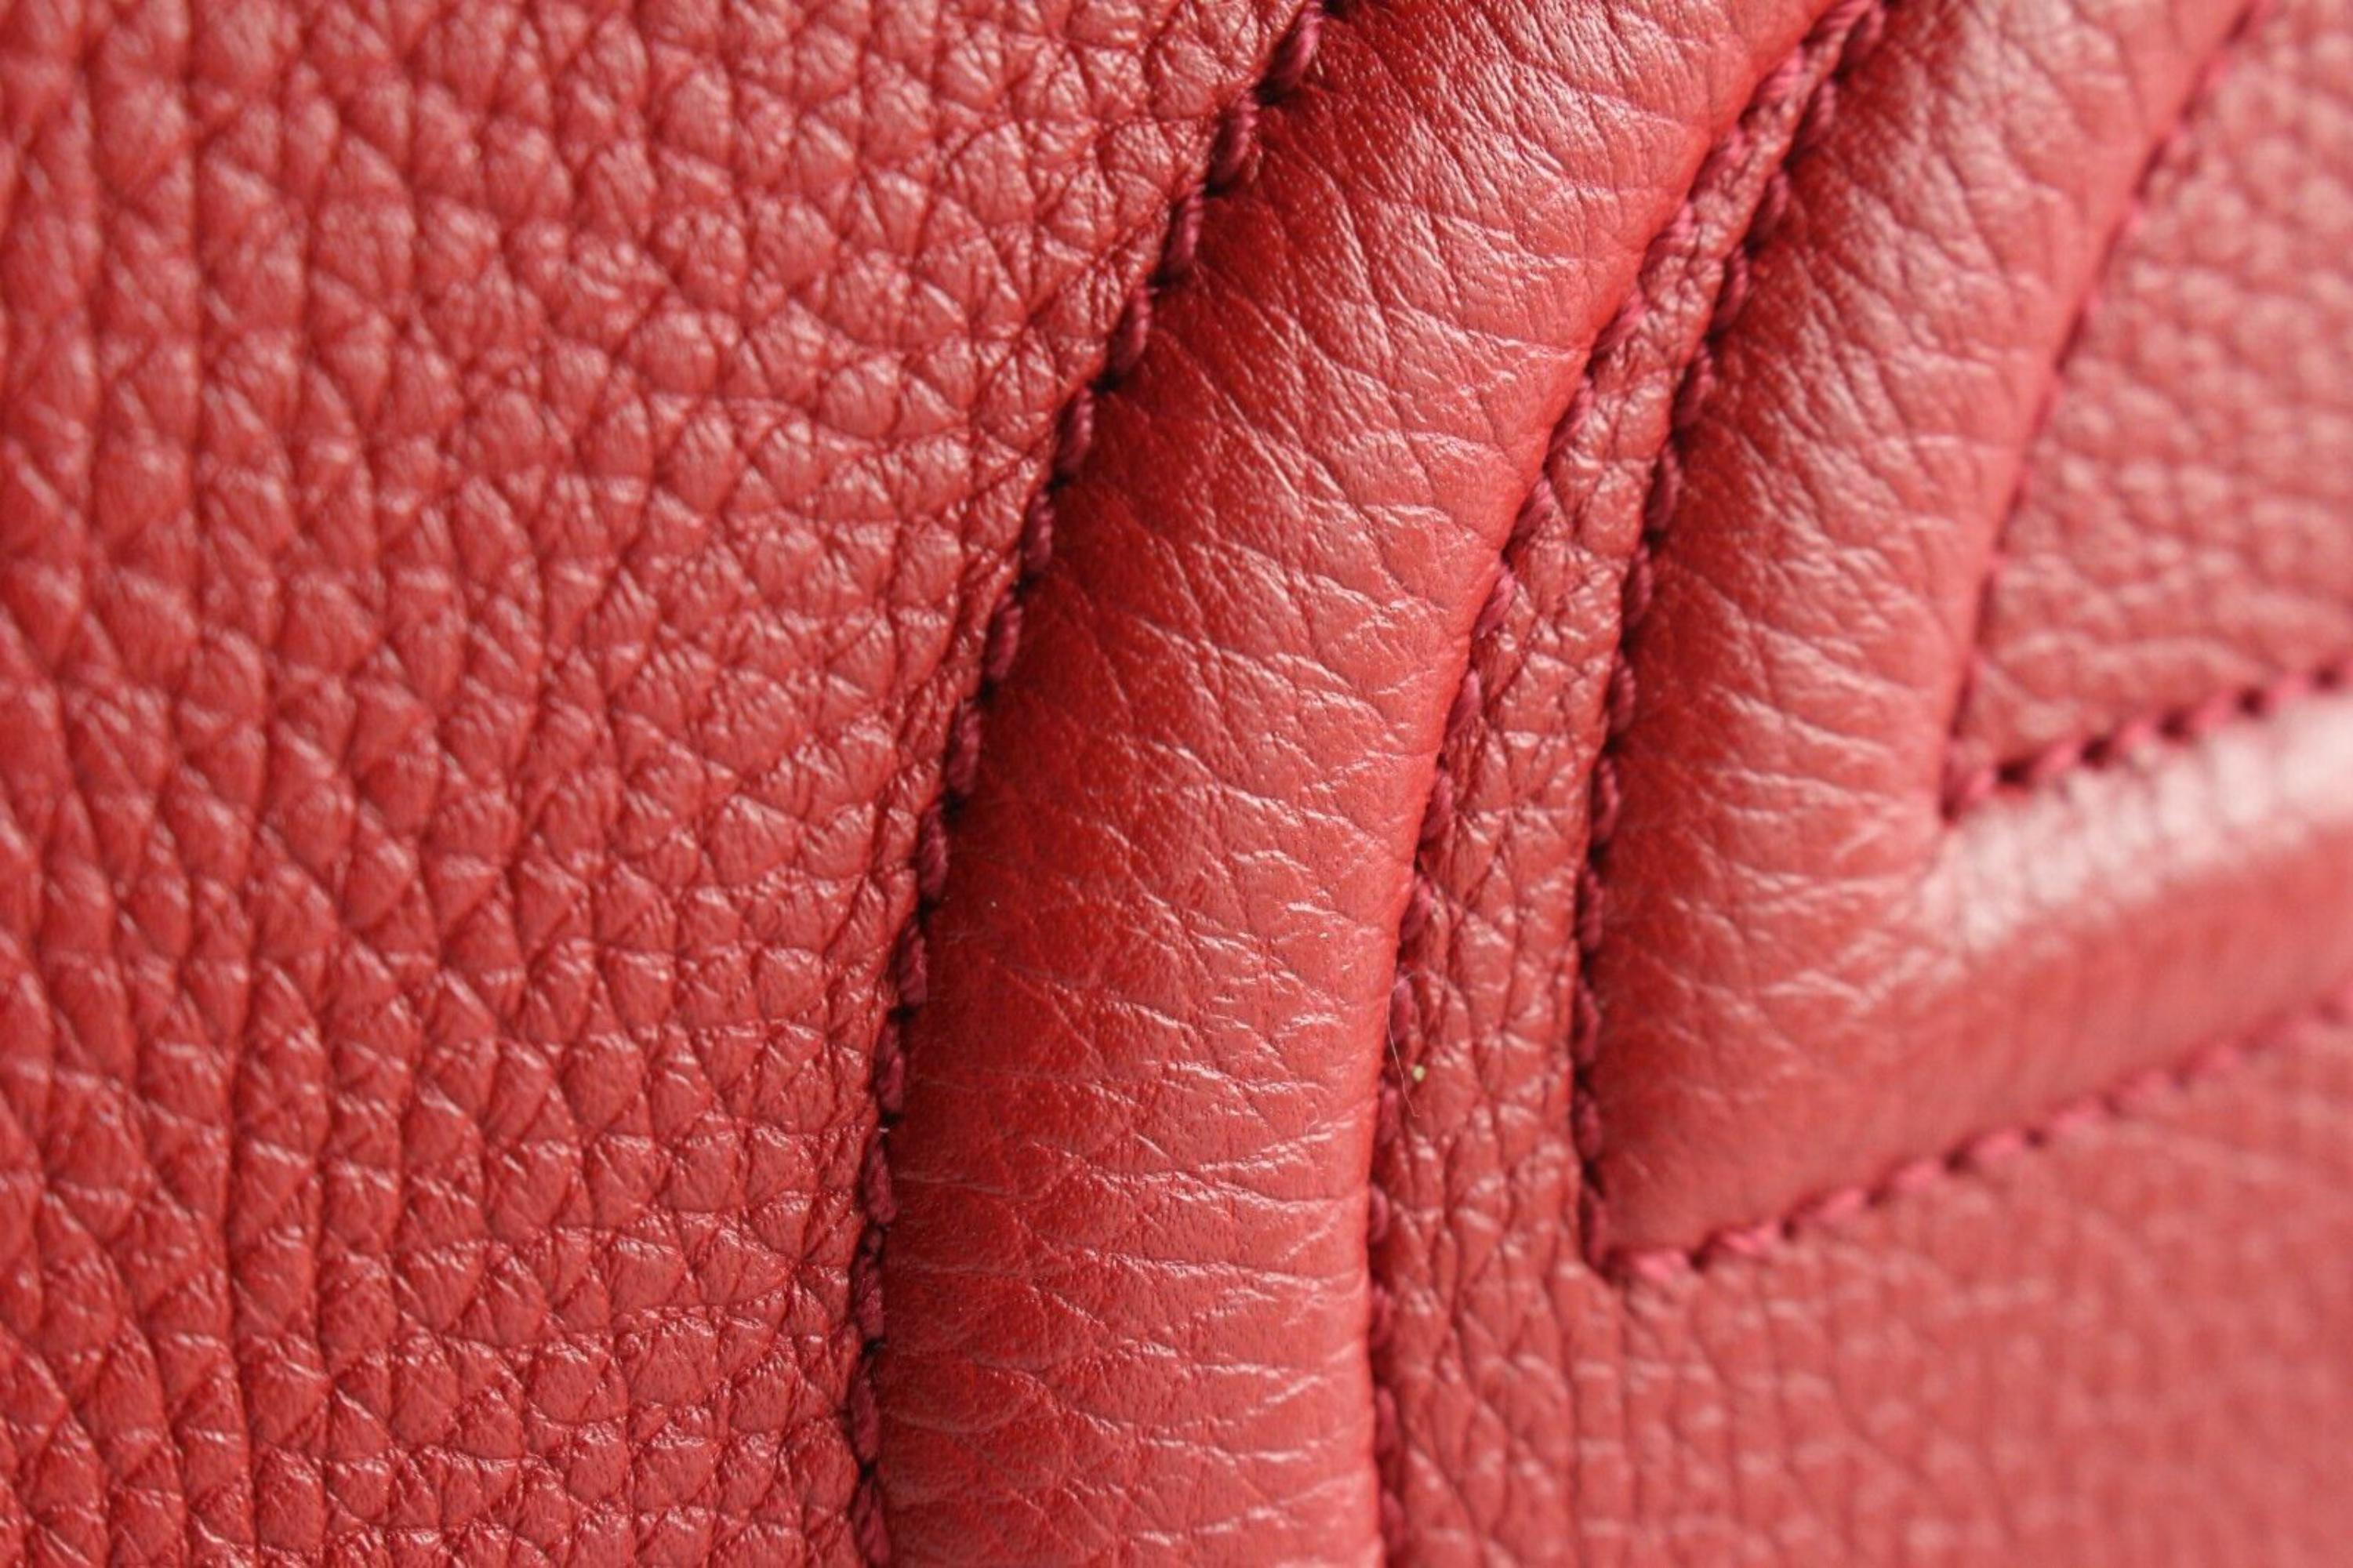 red gucci purse